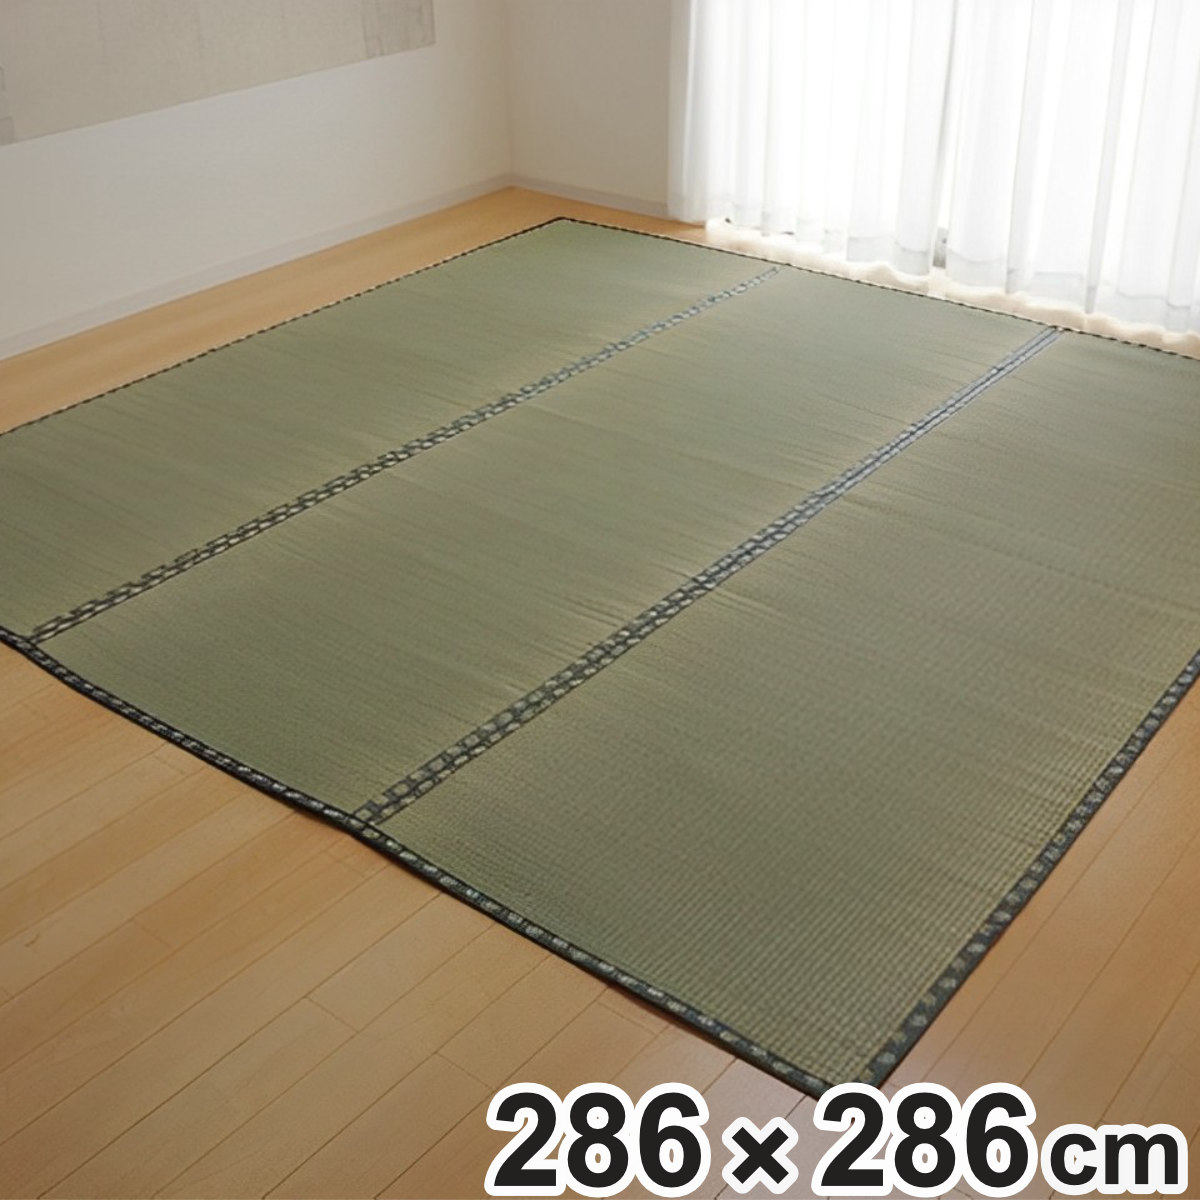 上敷き 純国産 い草 カーペット 双目織 『松』 本間 4.5畳 約286×286cm